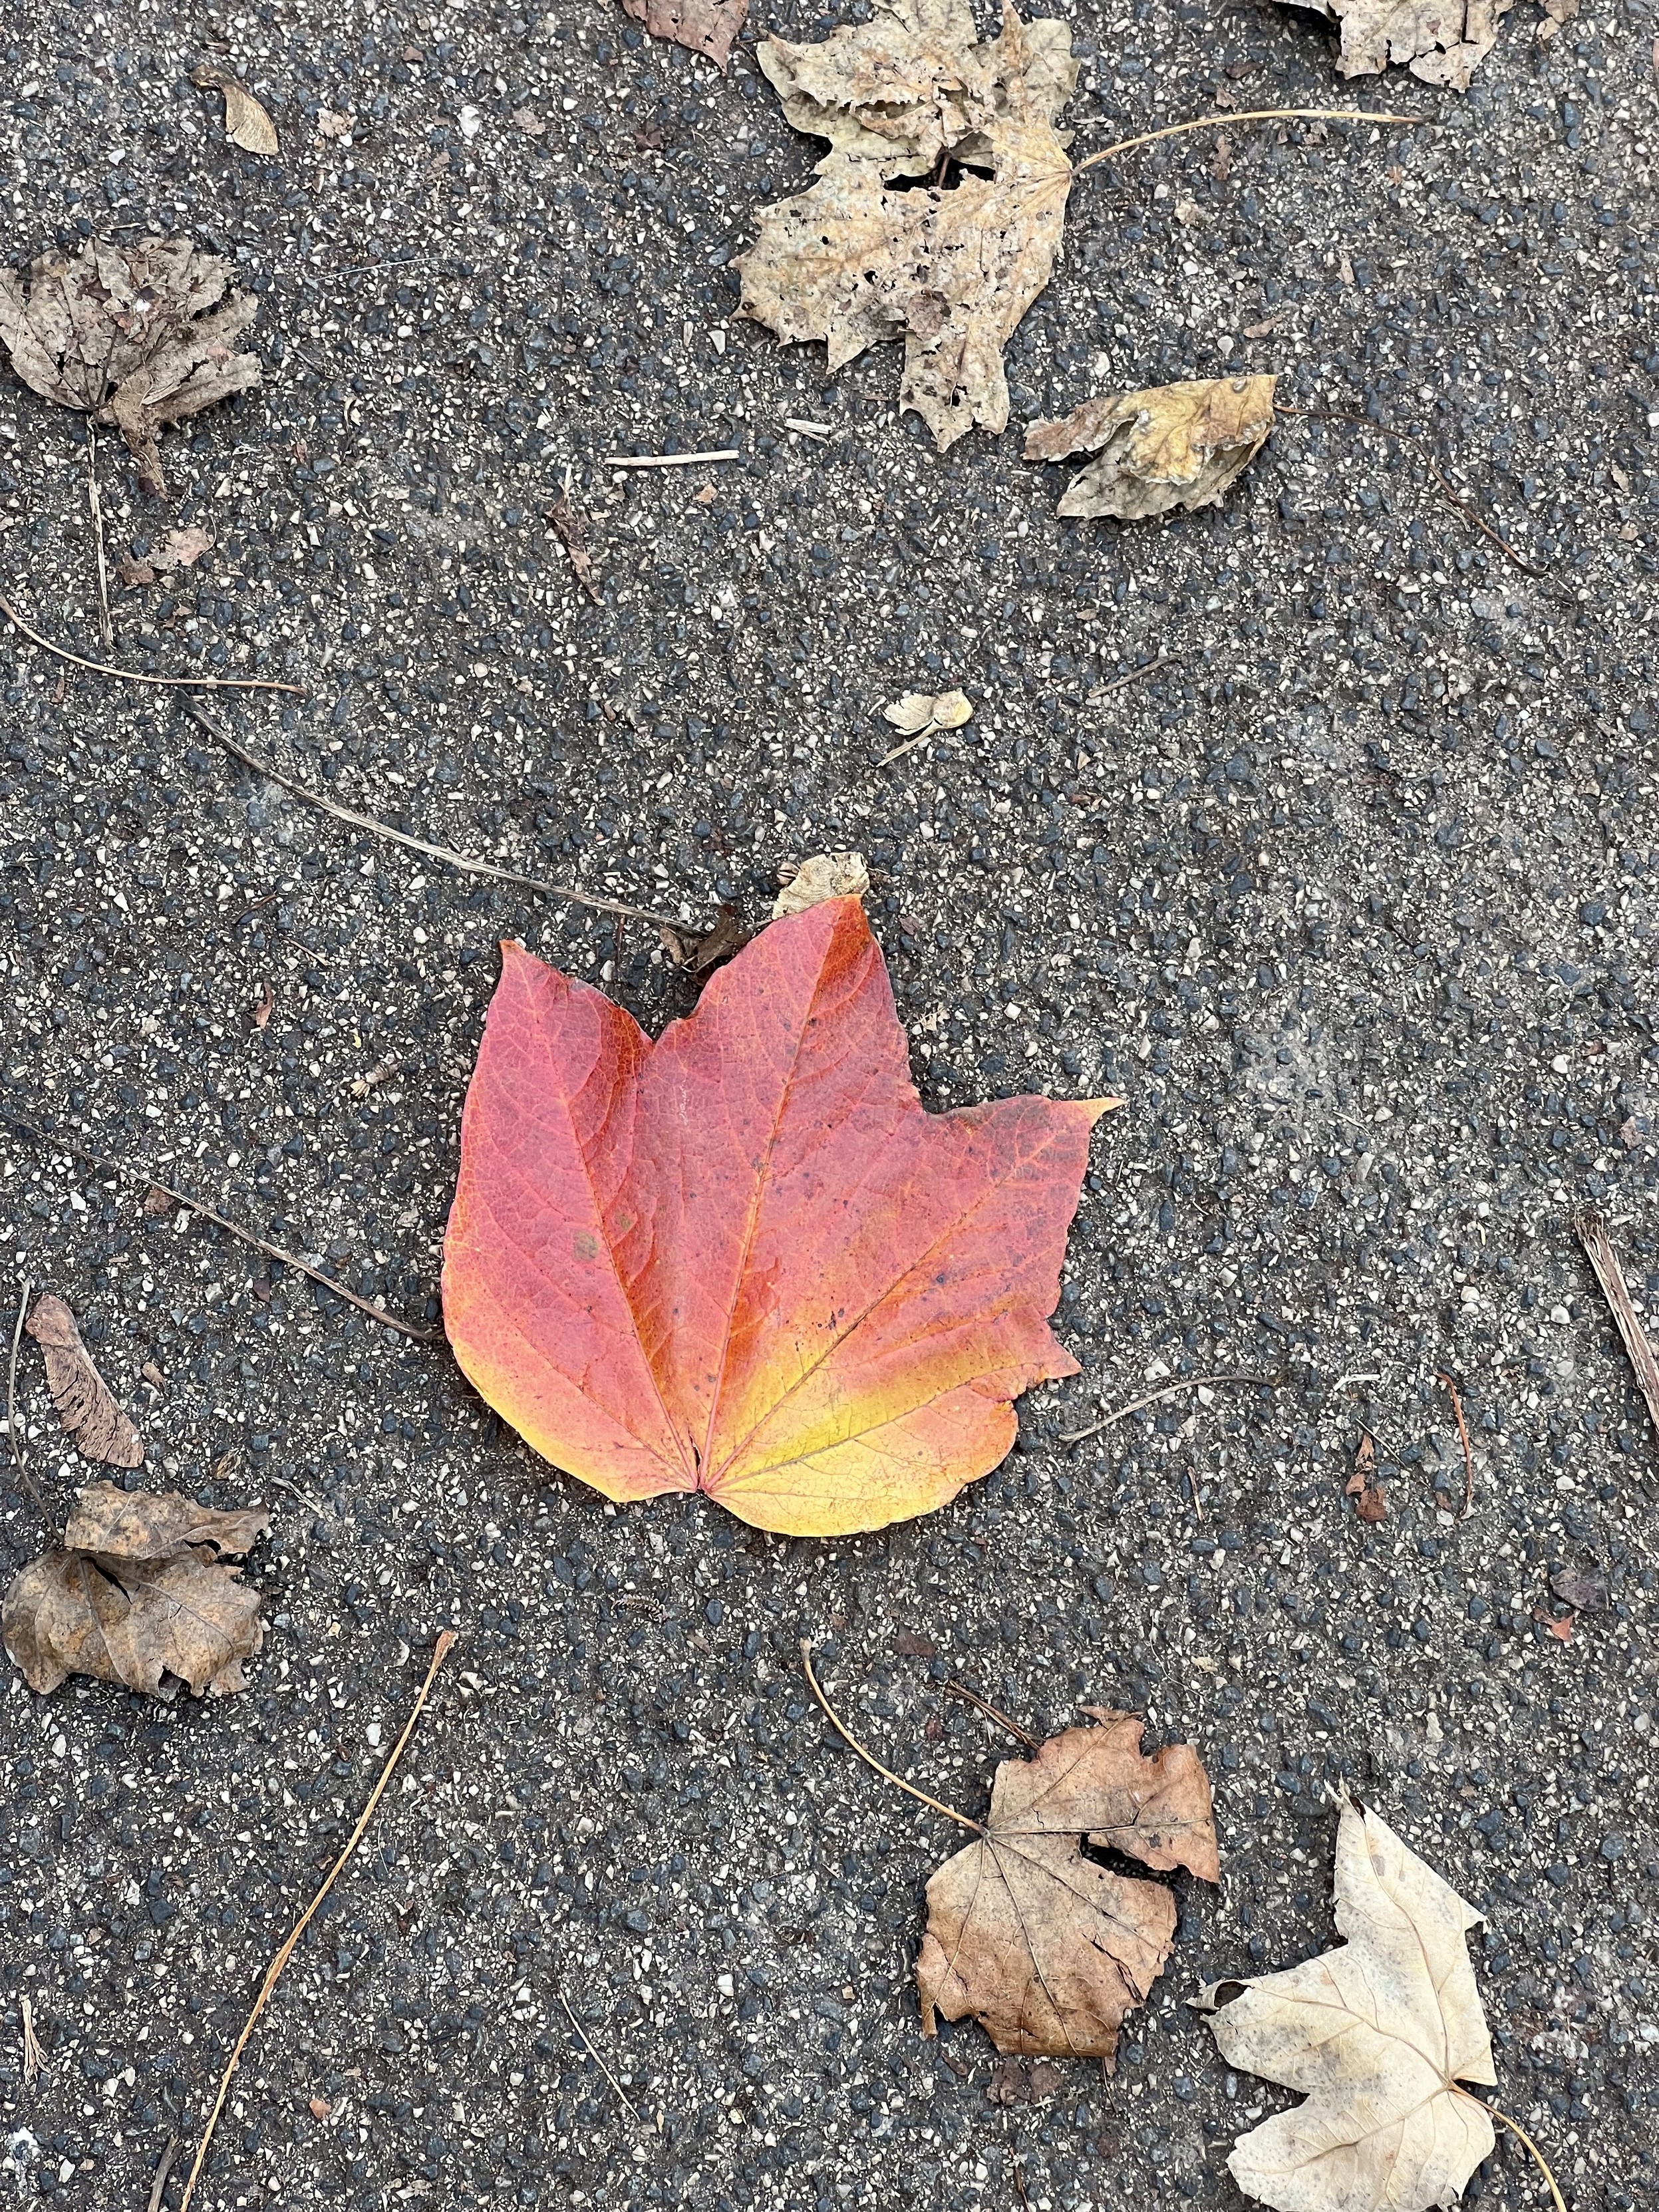 Das Bild zeigt ein einzelnes, leuchtend rot-gelbes Blatt, das inmitten von grauem Asphalt und anderen, eher blassen Herbstblättern liegt. Das auffällige Blatt sticht hervor durch seine lebendigen Farben und die klare, unbeschädigte Form, die einen schönen Kontrast zu seiner Umgebung bildet.